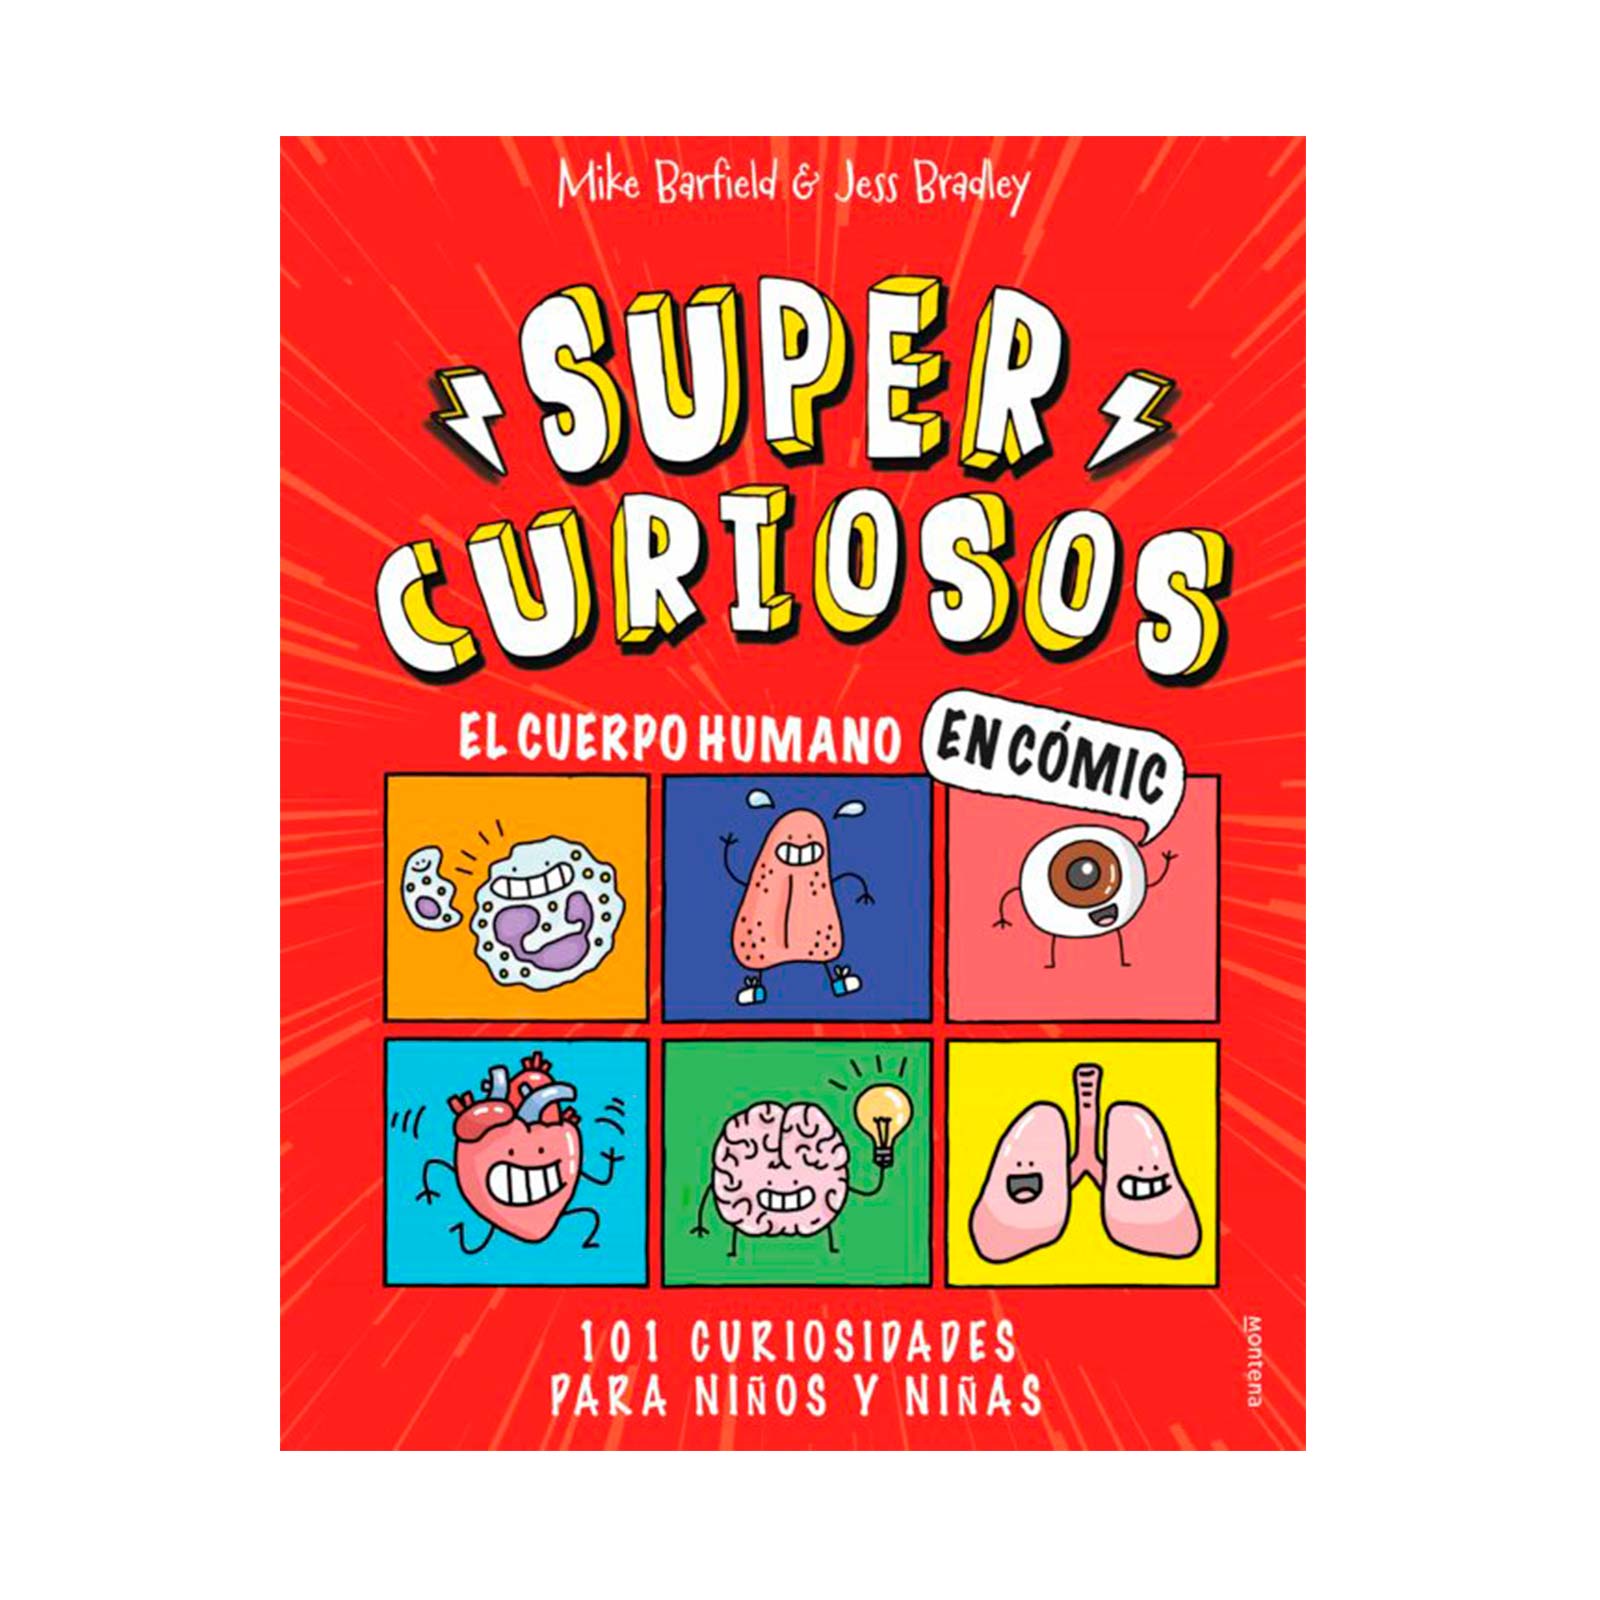 El cuerpo humano en cómic. 101 curiosidades para niños y niñas  (SUPERCURIOSOS 1)